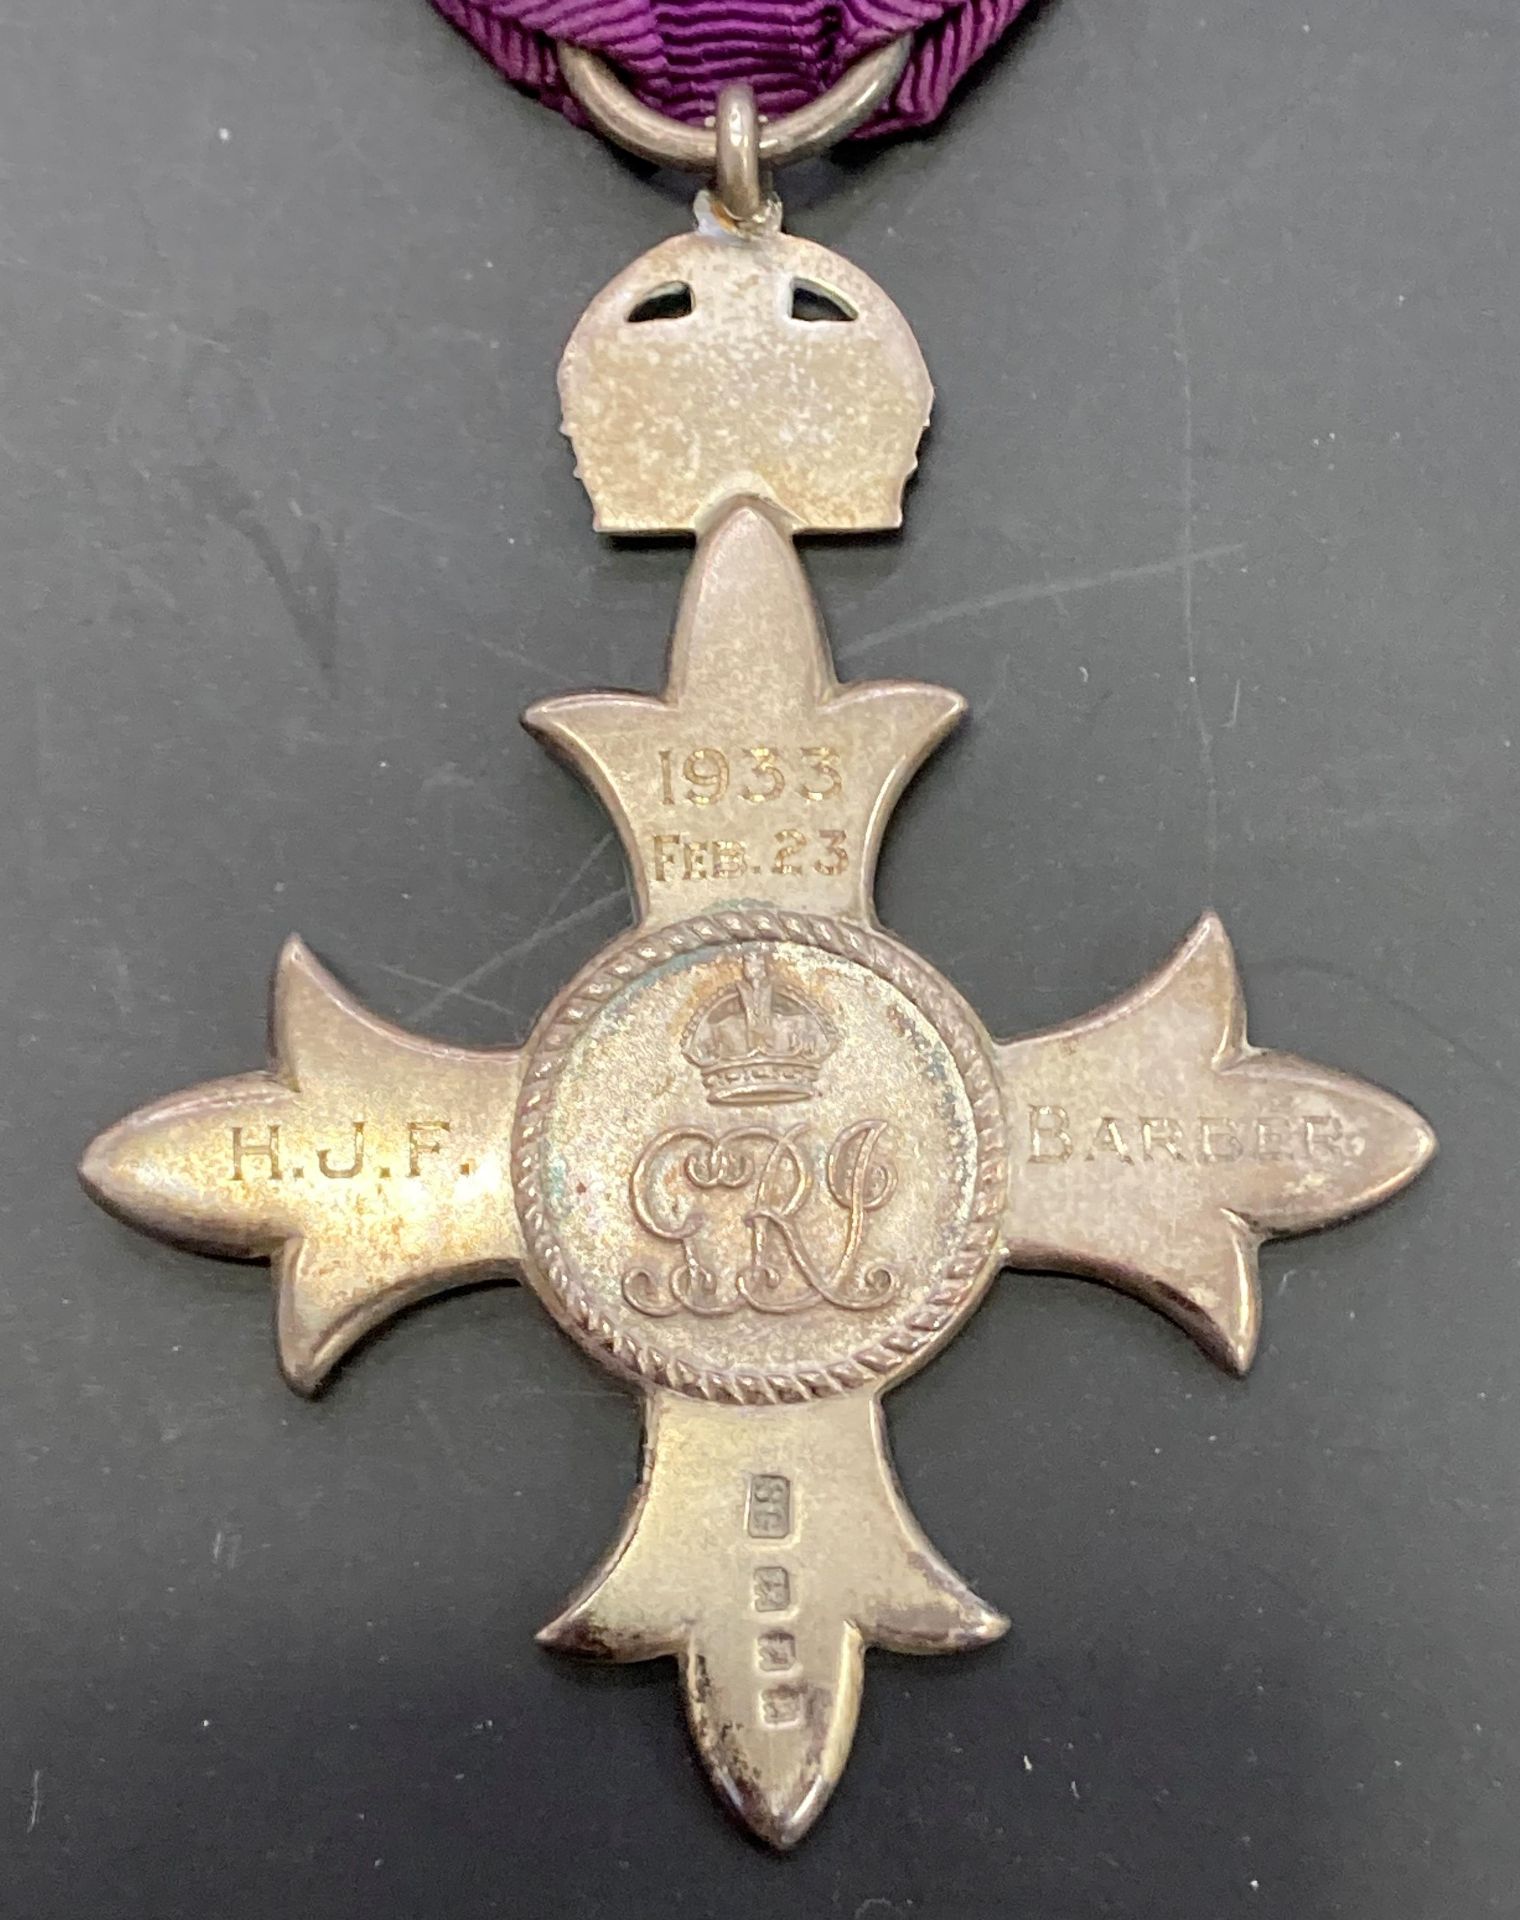 Order of the British Empire Member, Civil, (1933 FEB. 23. H.J.F. BARBER. - Image 7 of 7